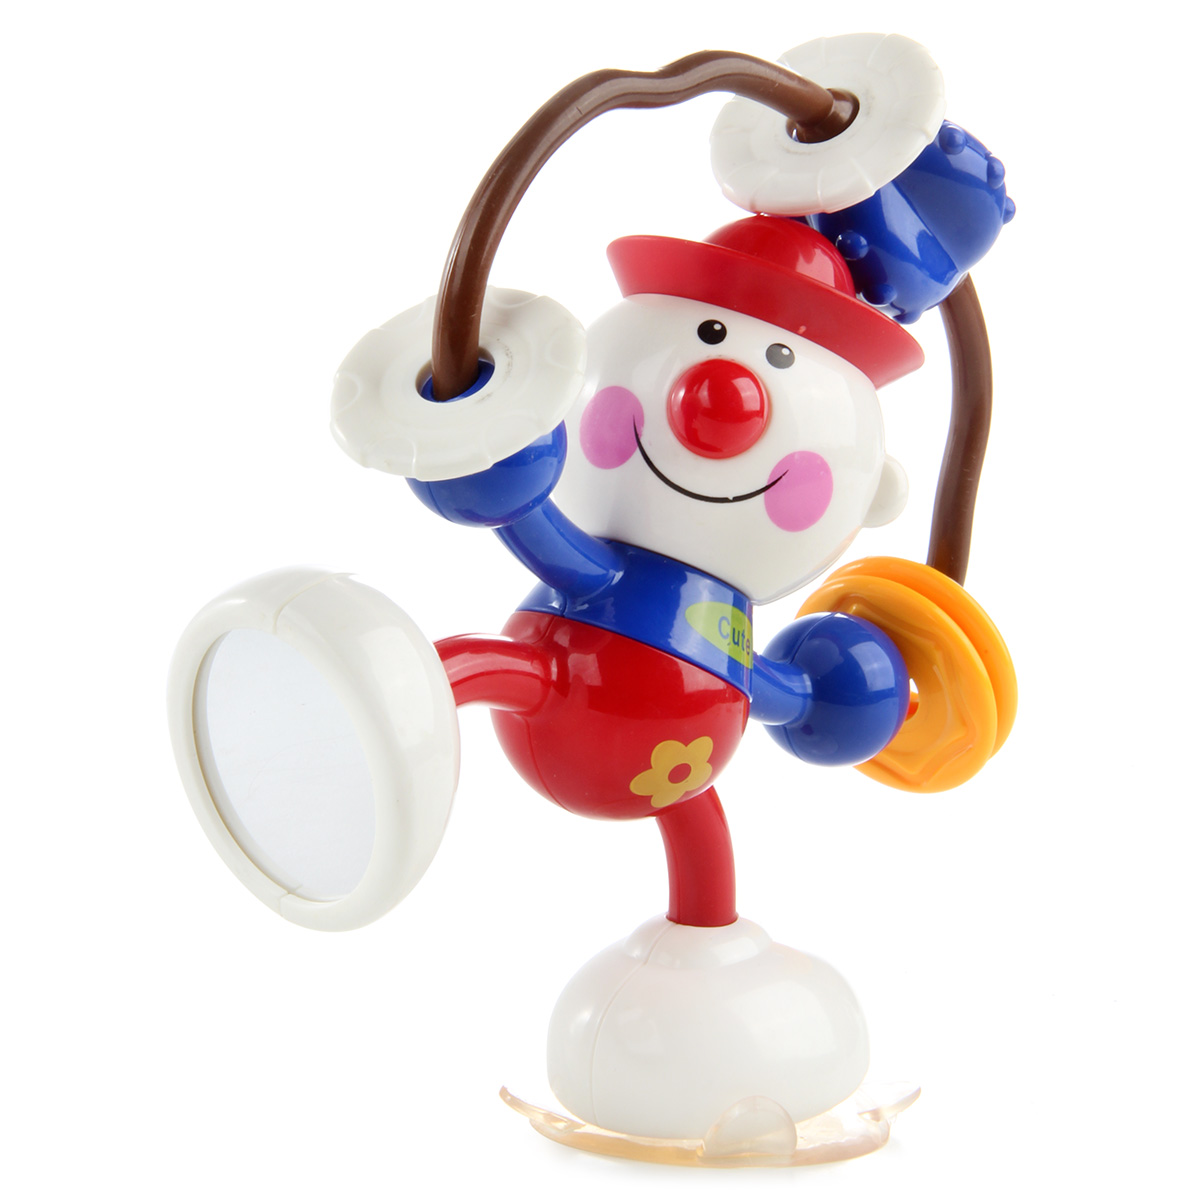 Развивающая игрушка Ути Пути клоун крутилка - фото 2